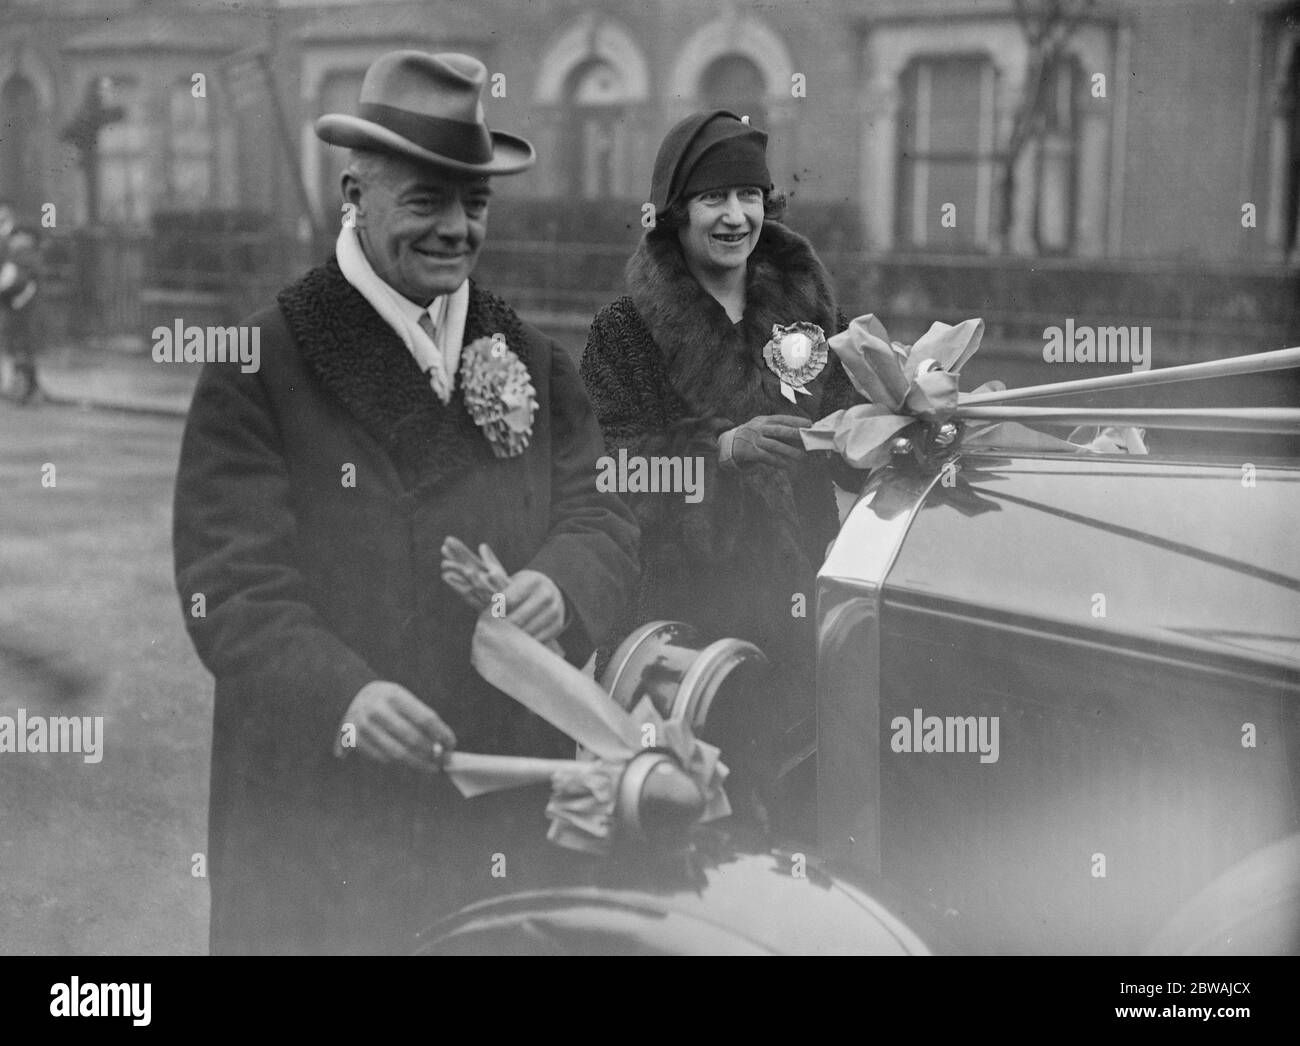 Ilford durch - Wahl . Sir George und Lady Hamilton . 1928 Stockfoto